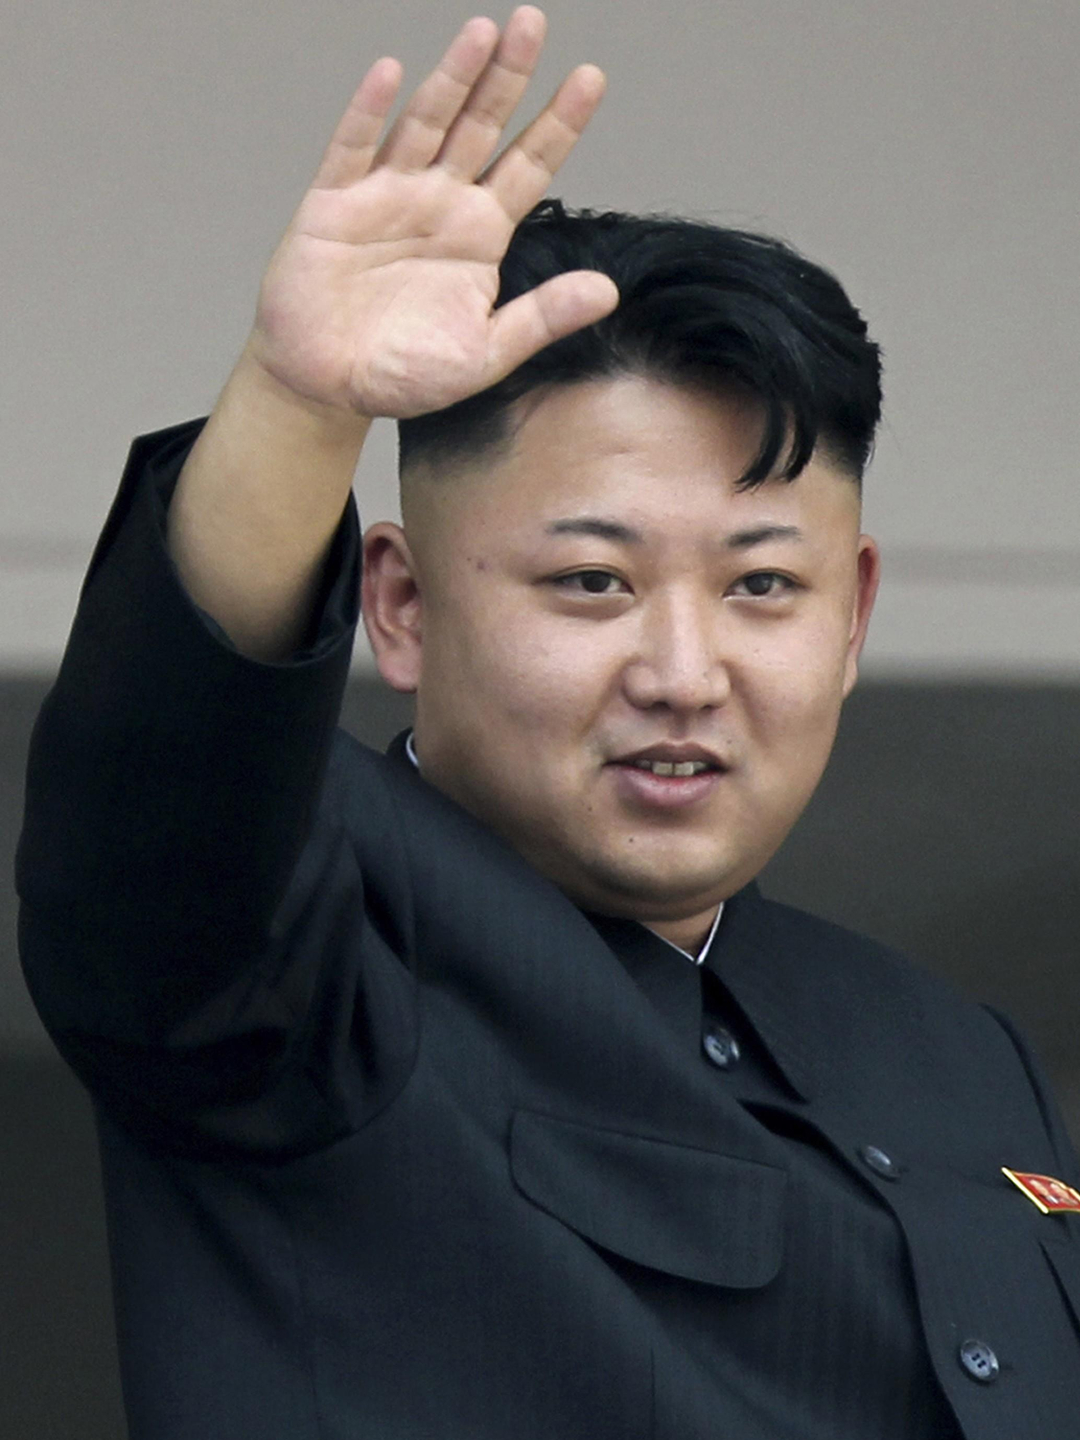 Kim Jong-un way to fame